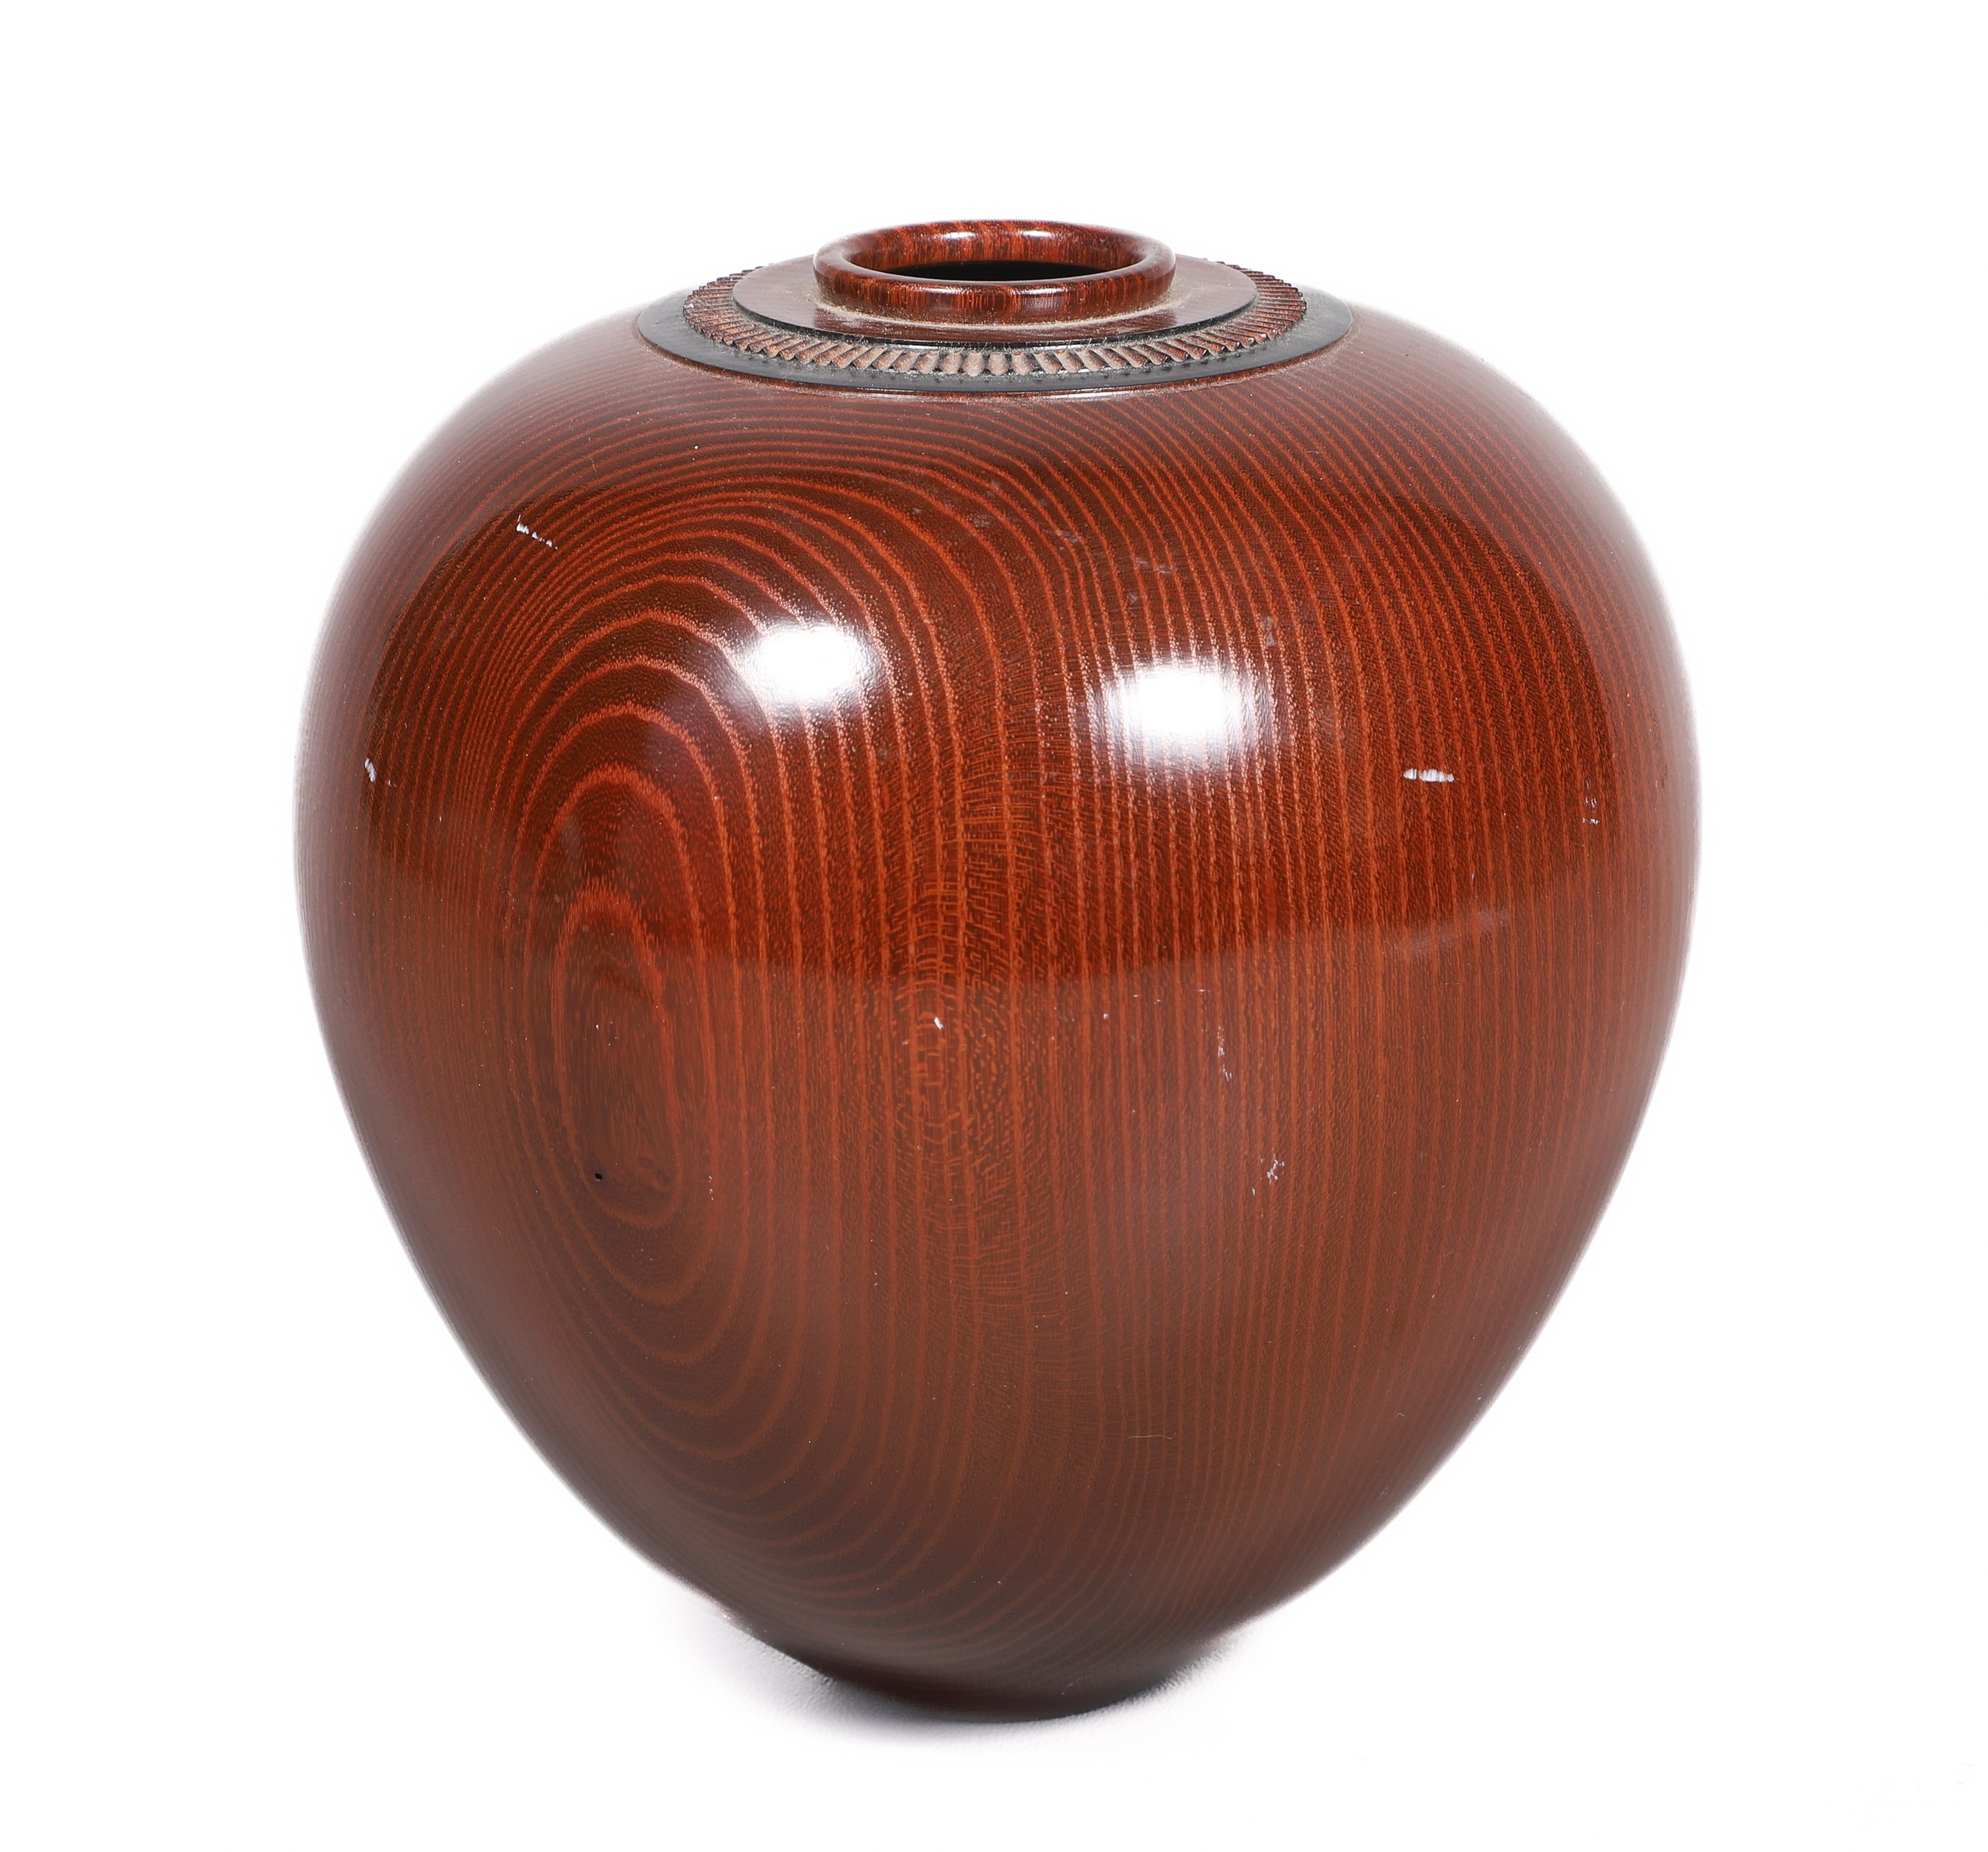 David Souza turned wood vase, marked